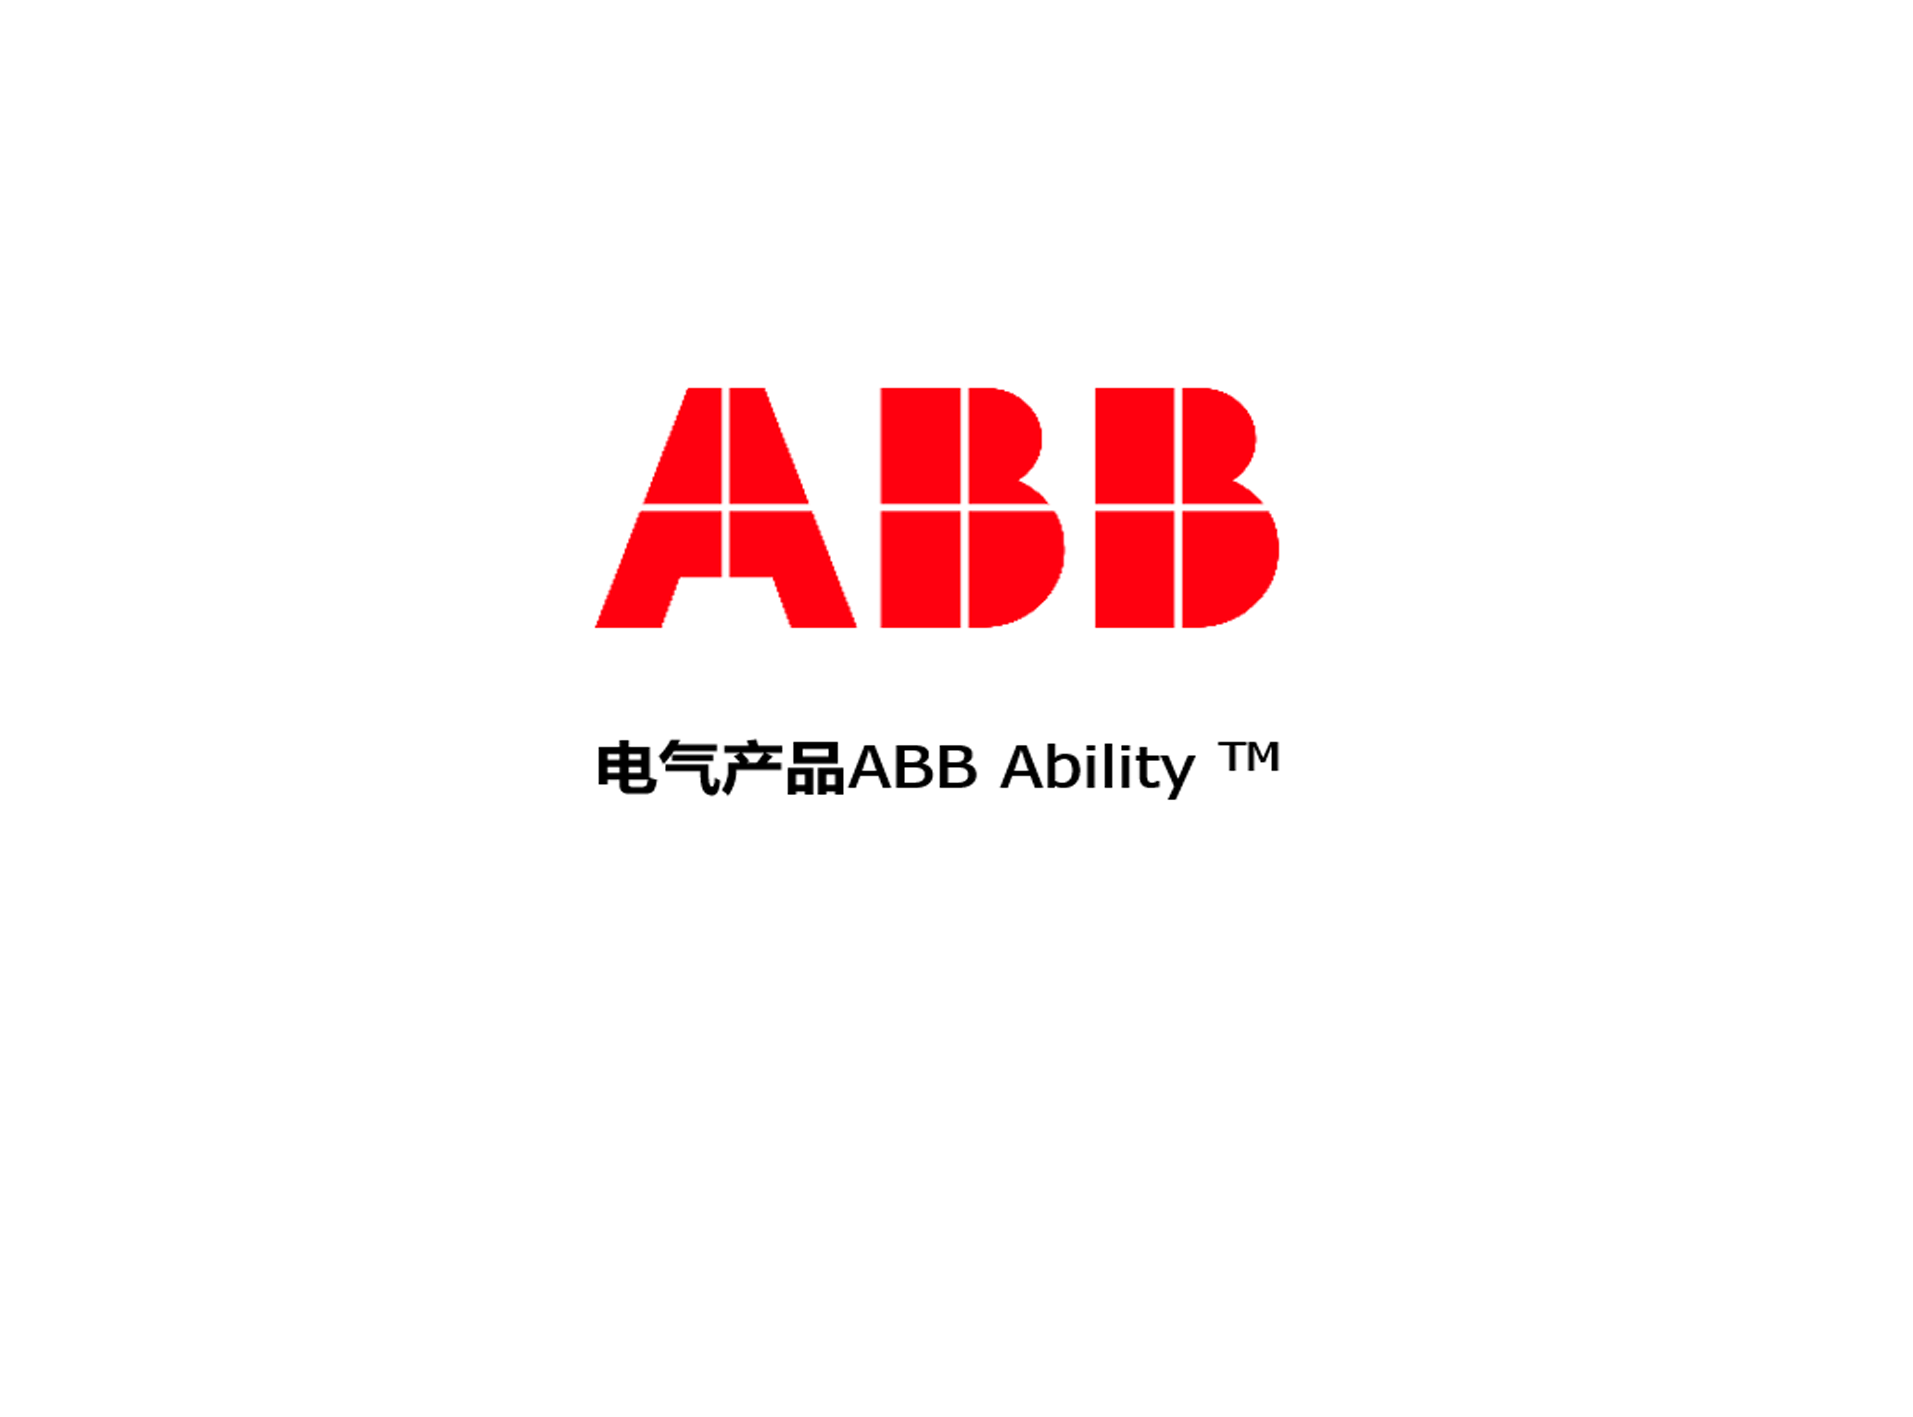 ABB Ability™